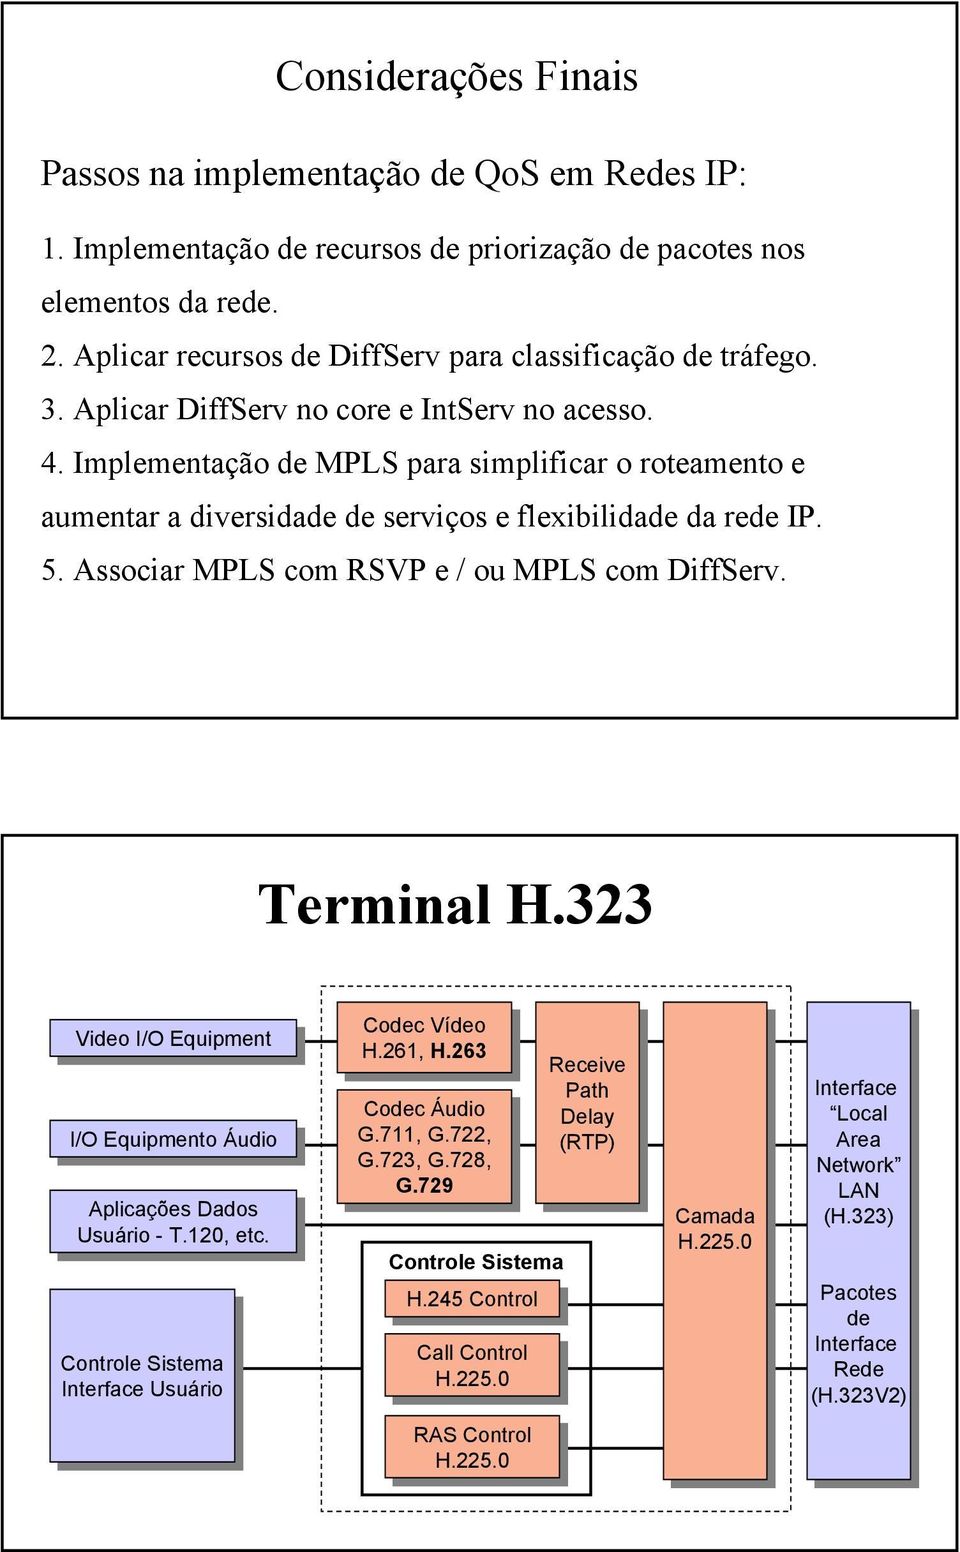 Implementação de MPLS para simplificar o roteamento e aumentar a diversidade de serviços e flexibilidade da rede IP. 5. Associar MPLS com RSVP e / ou MPLS com DiffServ. Terminal H.